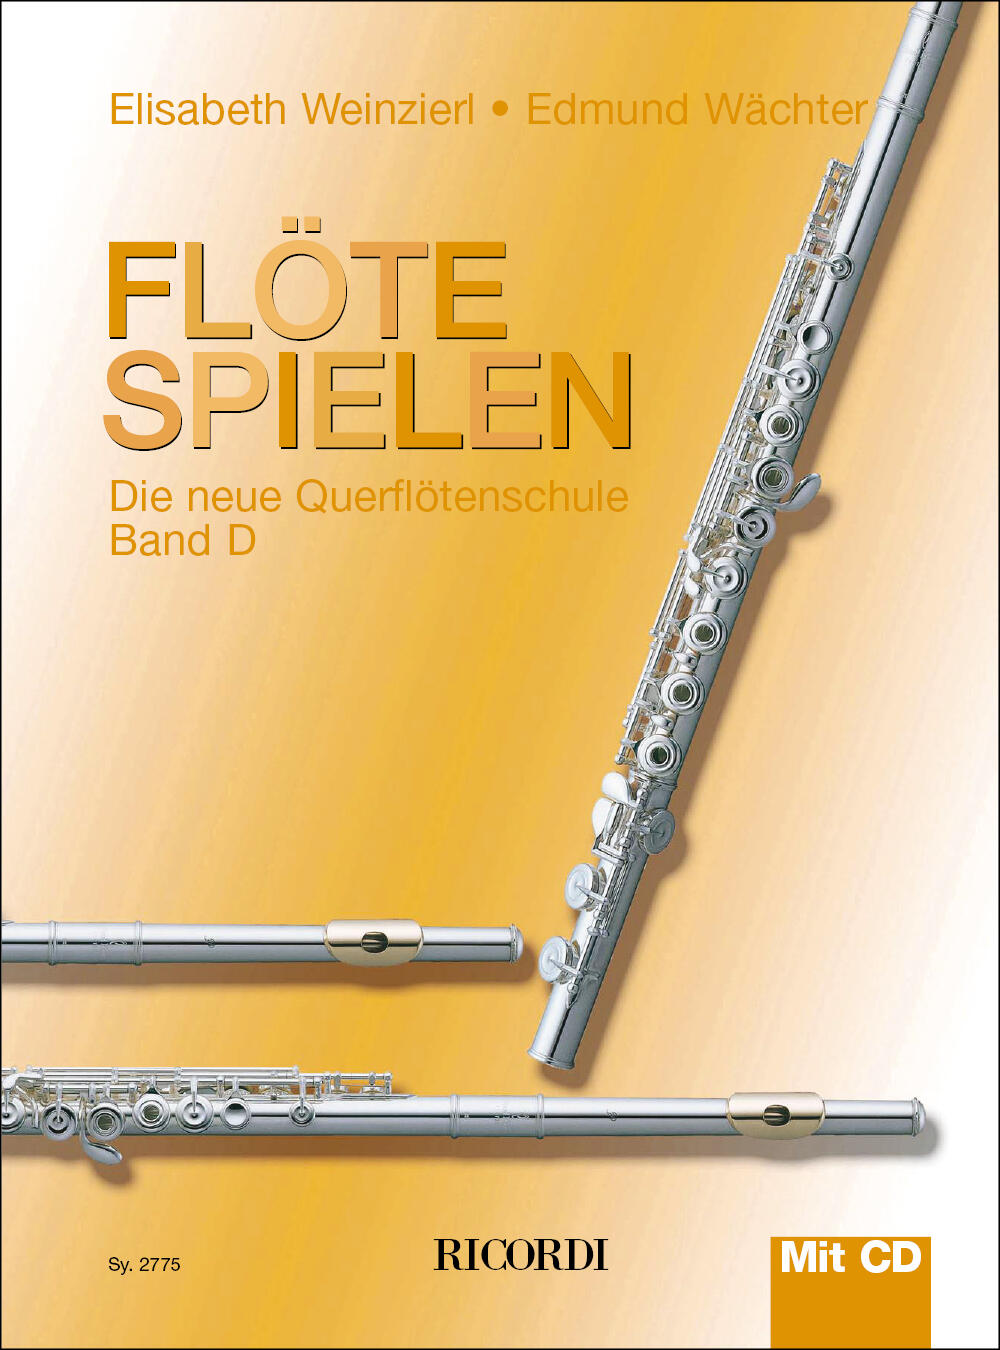 Ricordi Flöte spielen Band D mit CD Die neue Querflötenschule : photo 1